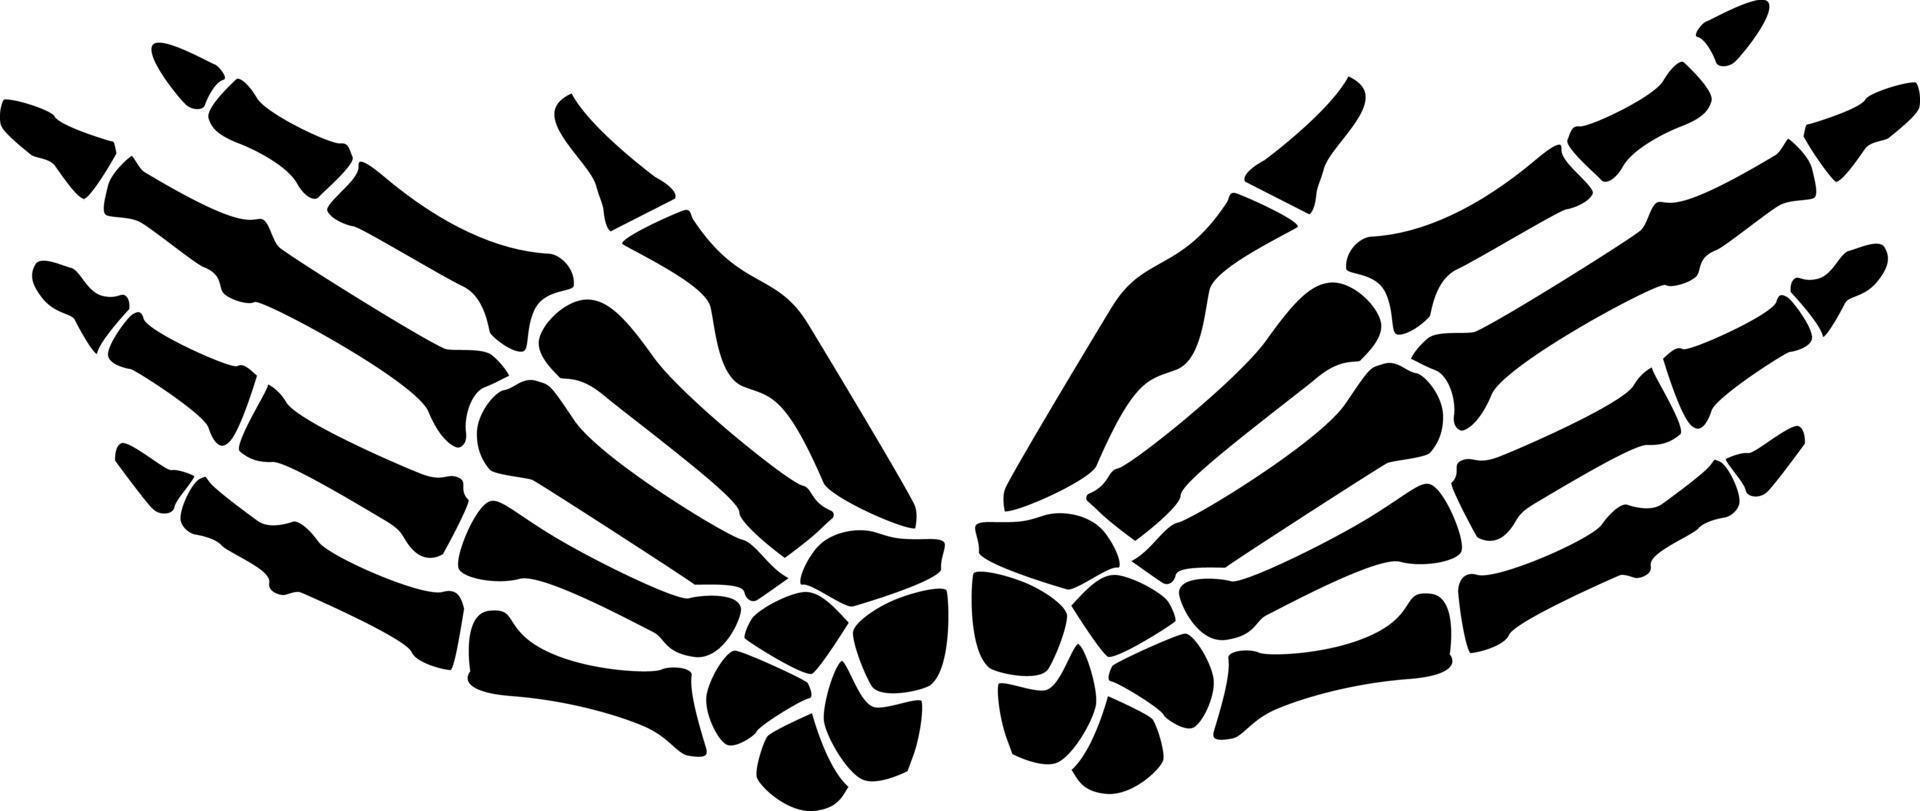 Silhouette von Finger Knochen, Vektor Bild